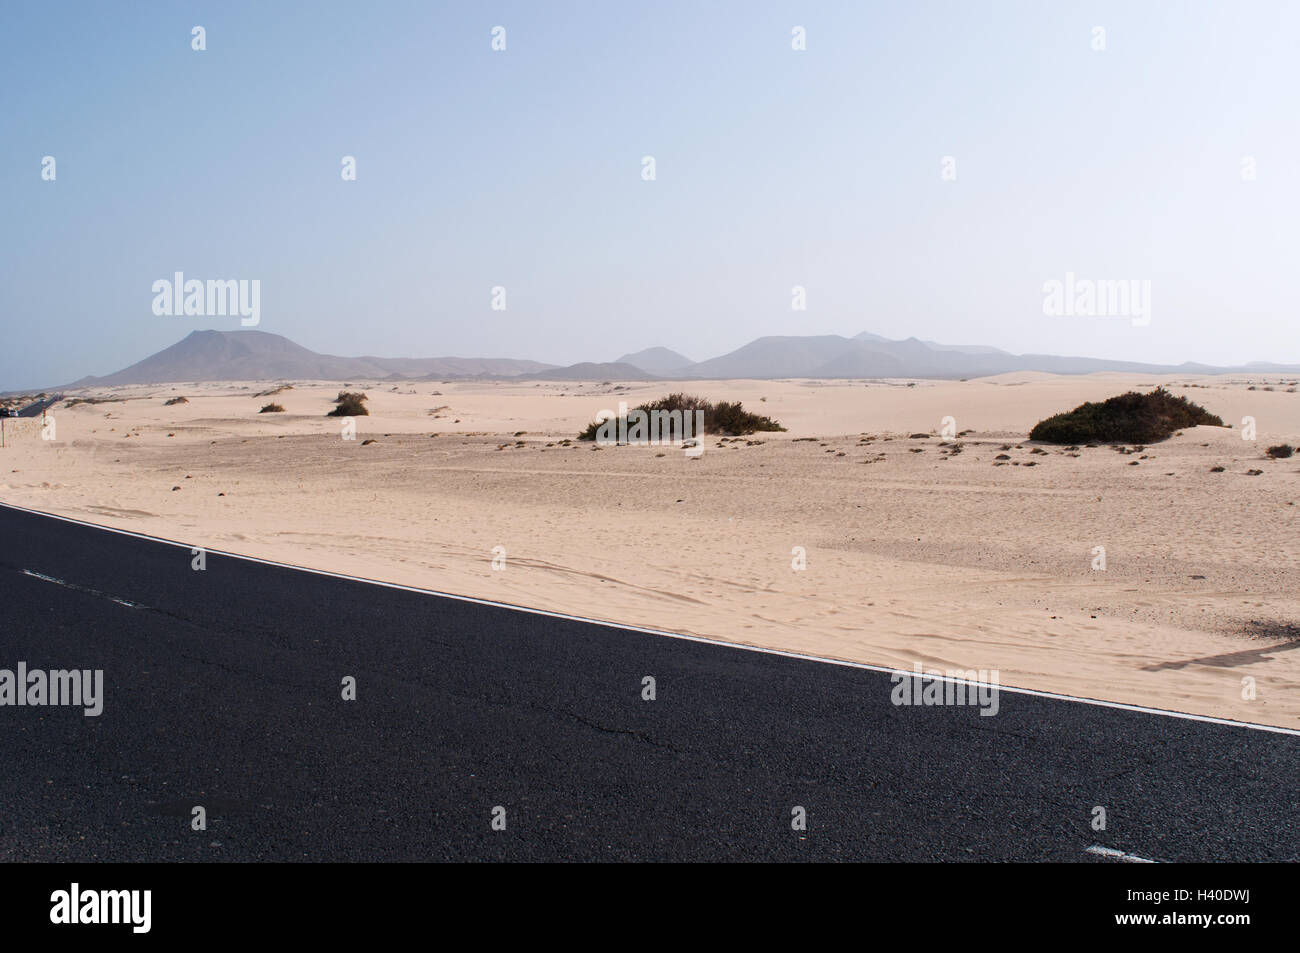 Fuerteventura, Îles Canaries, Afrique du Nord, Espagne : mount, paysage désertique, routier et des dunes de sable dans le parc naturel de Corralejo Banque D'Images